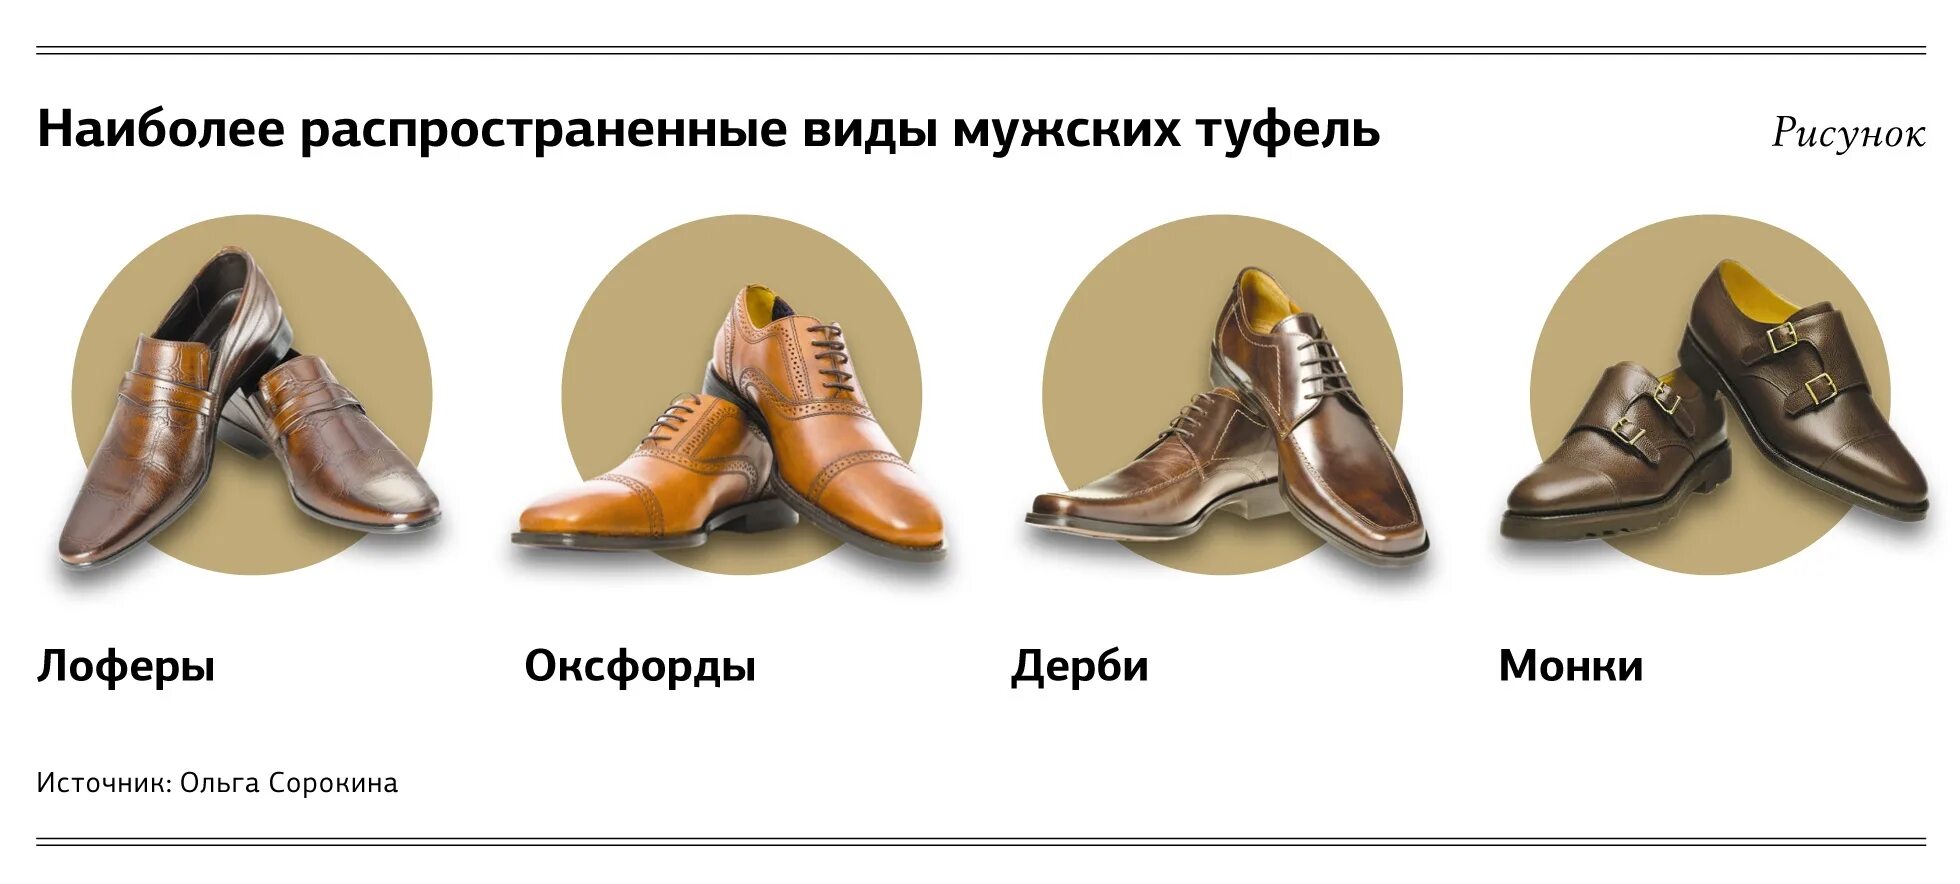 Название мужских ботинок. Типы мужской обуви. Типы мужских туфель. Мужская обувь названия моделей.